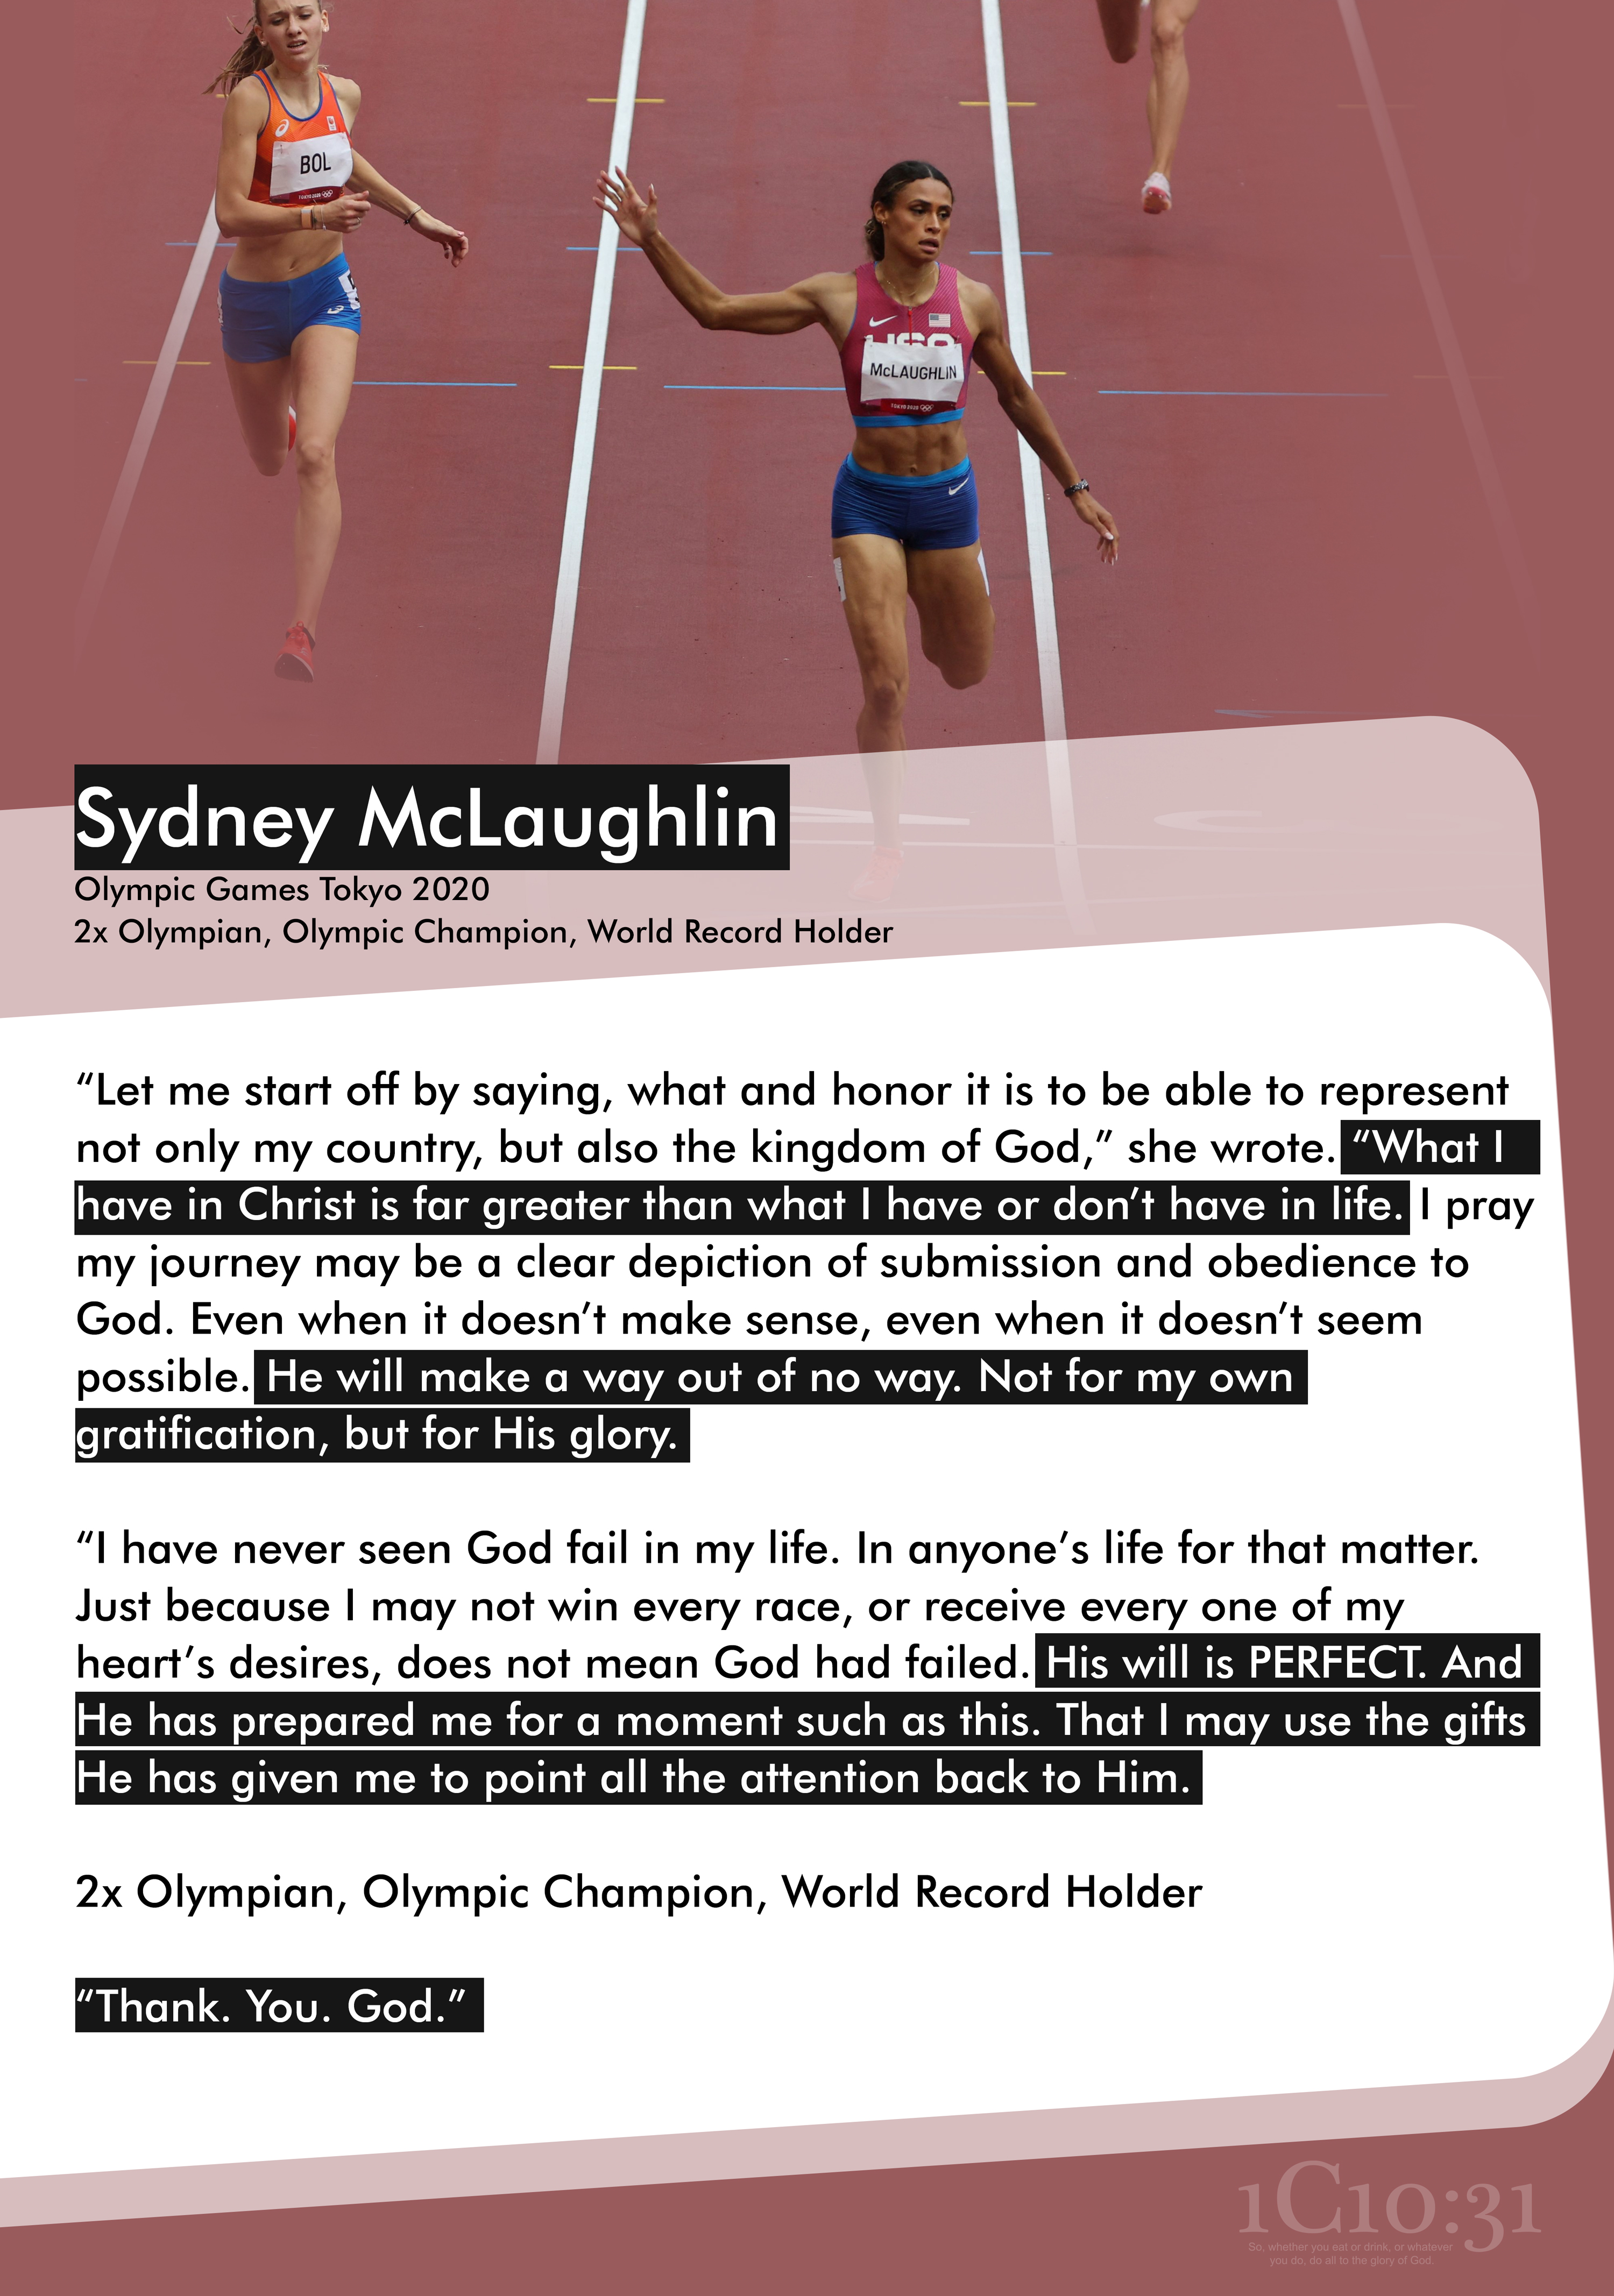 Sydney McLaughlin